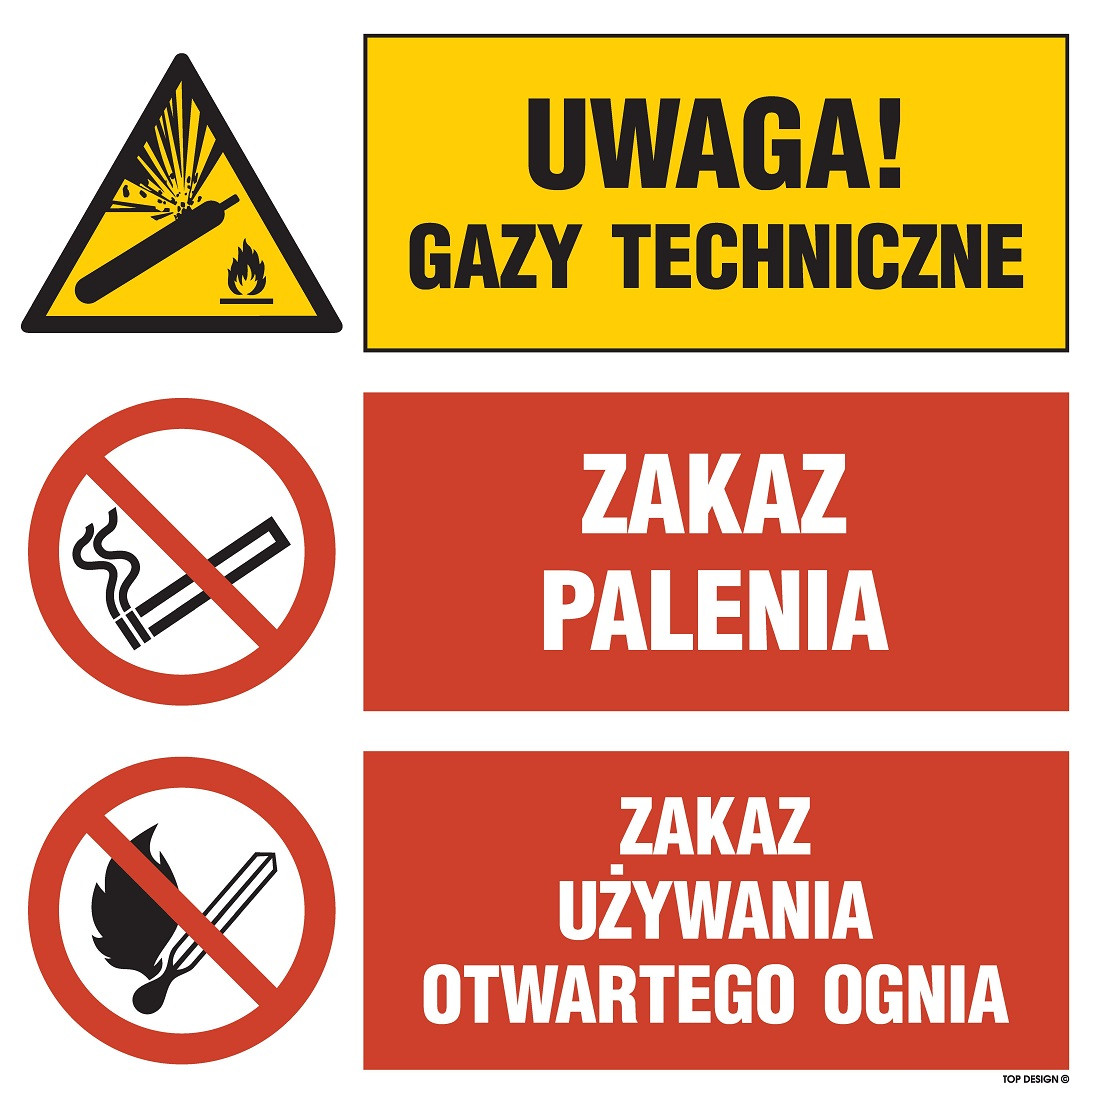 Znak - Uwaga! gazy techniczne, Zakaz palenia, Zakaz używania otwartego ognia OI028